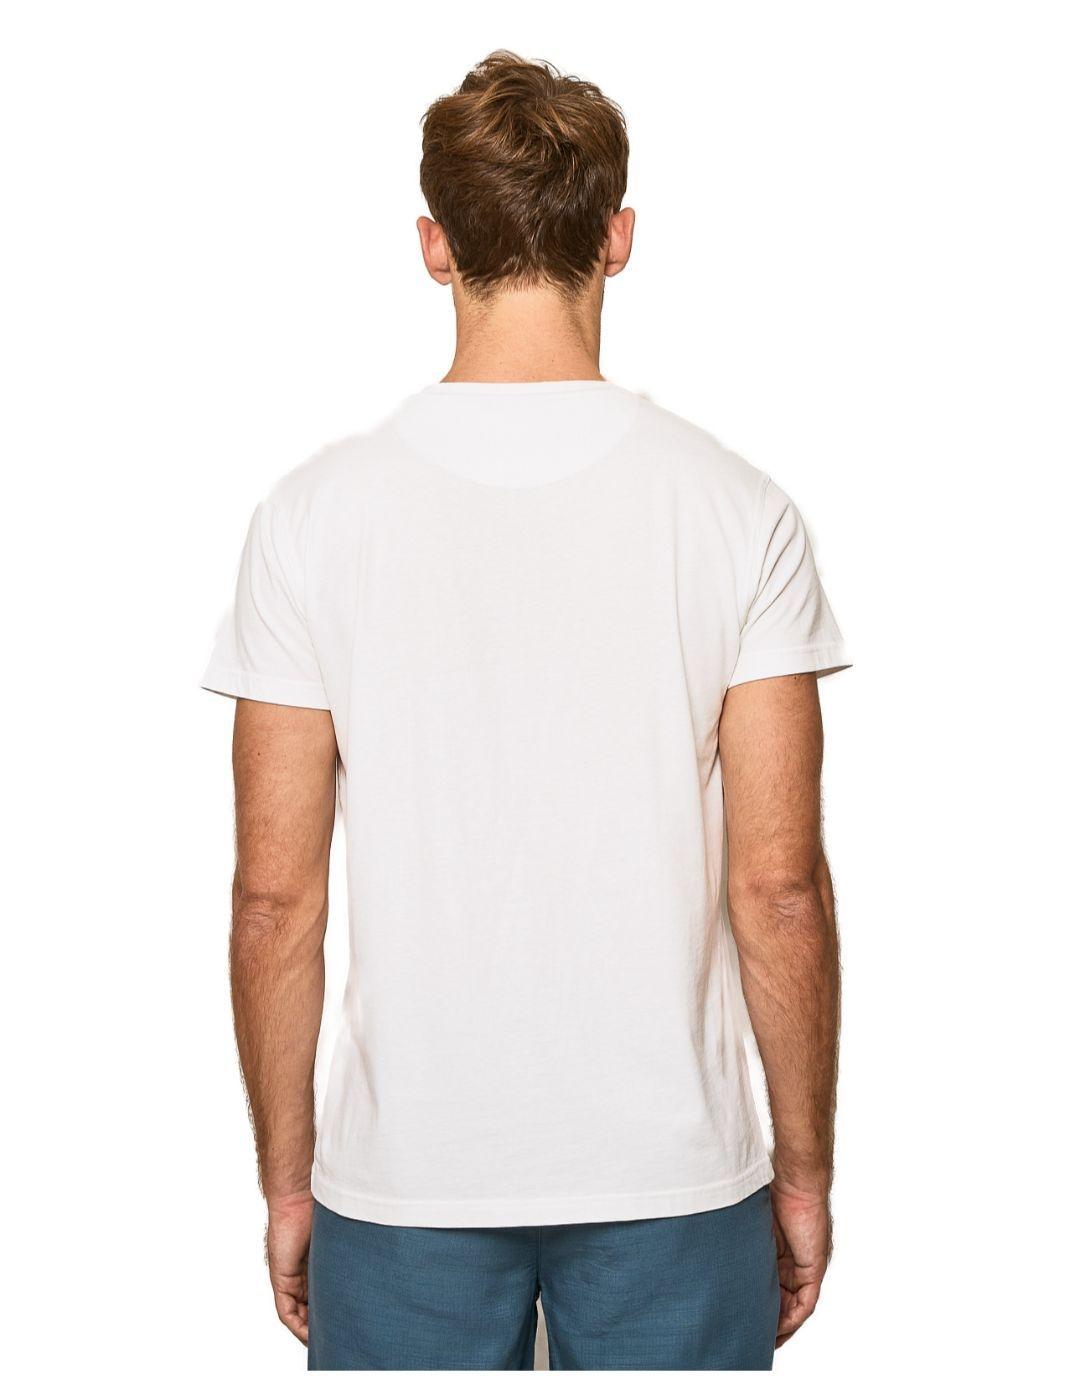 Camiseta Scotta classic eco blanca para hombre-a